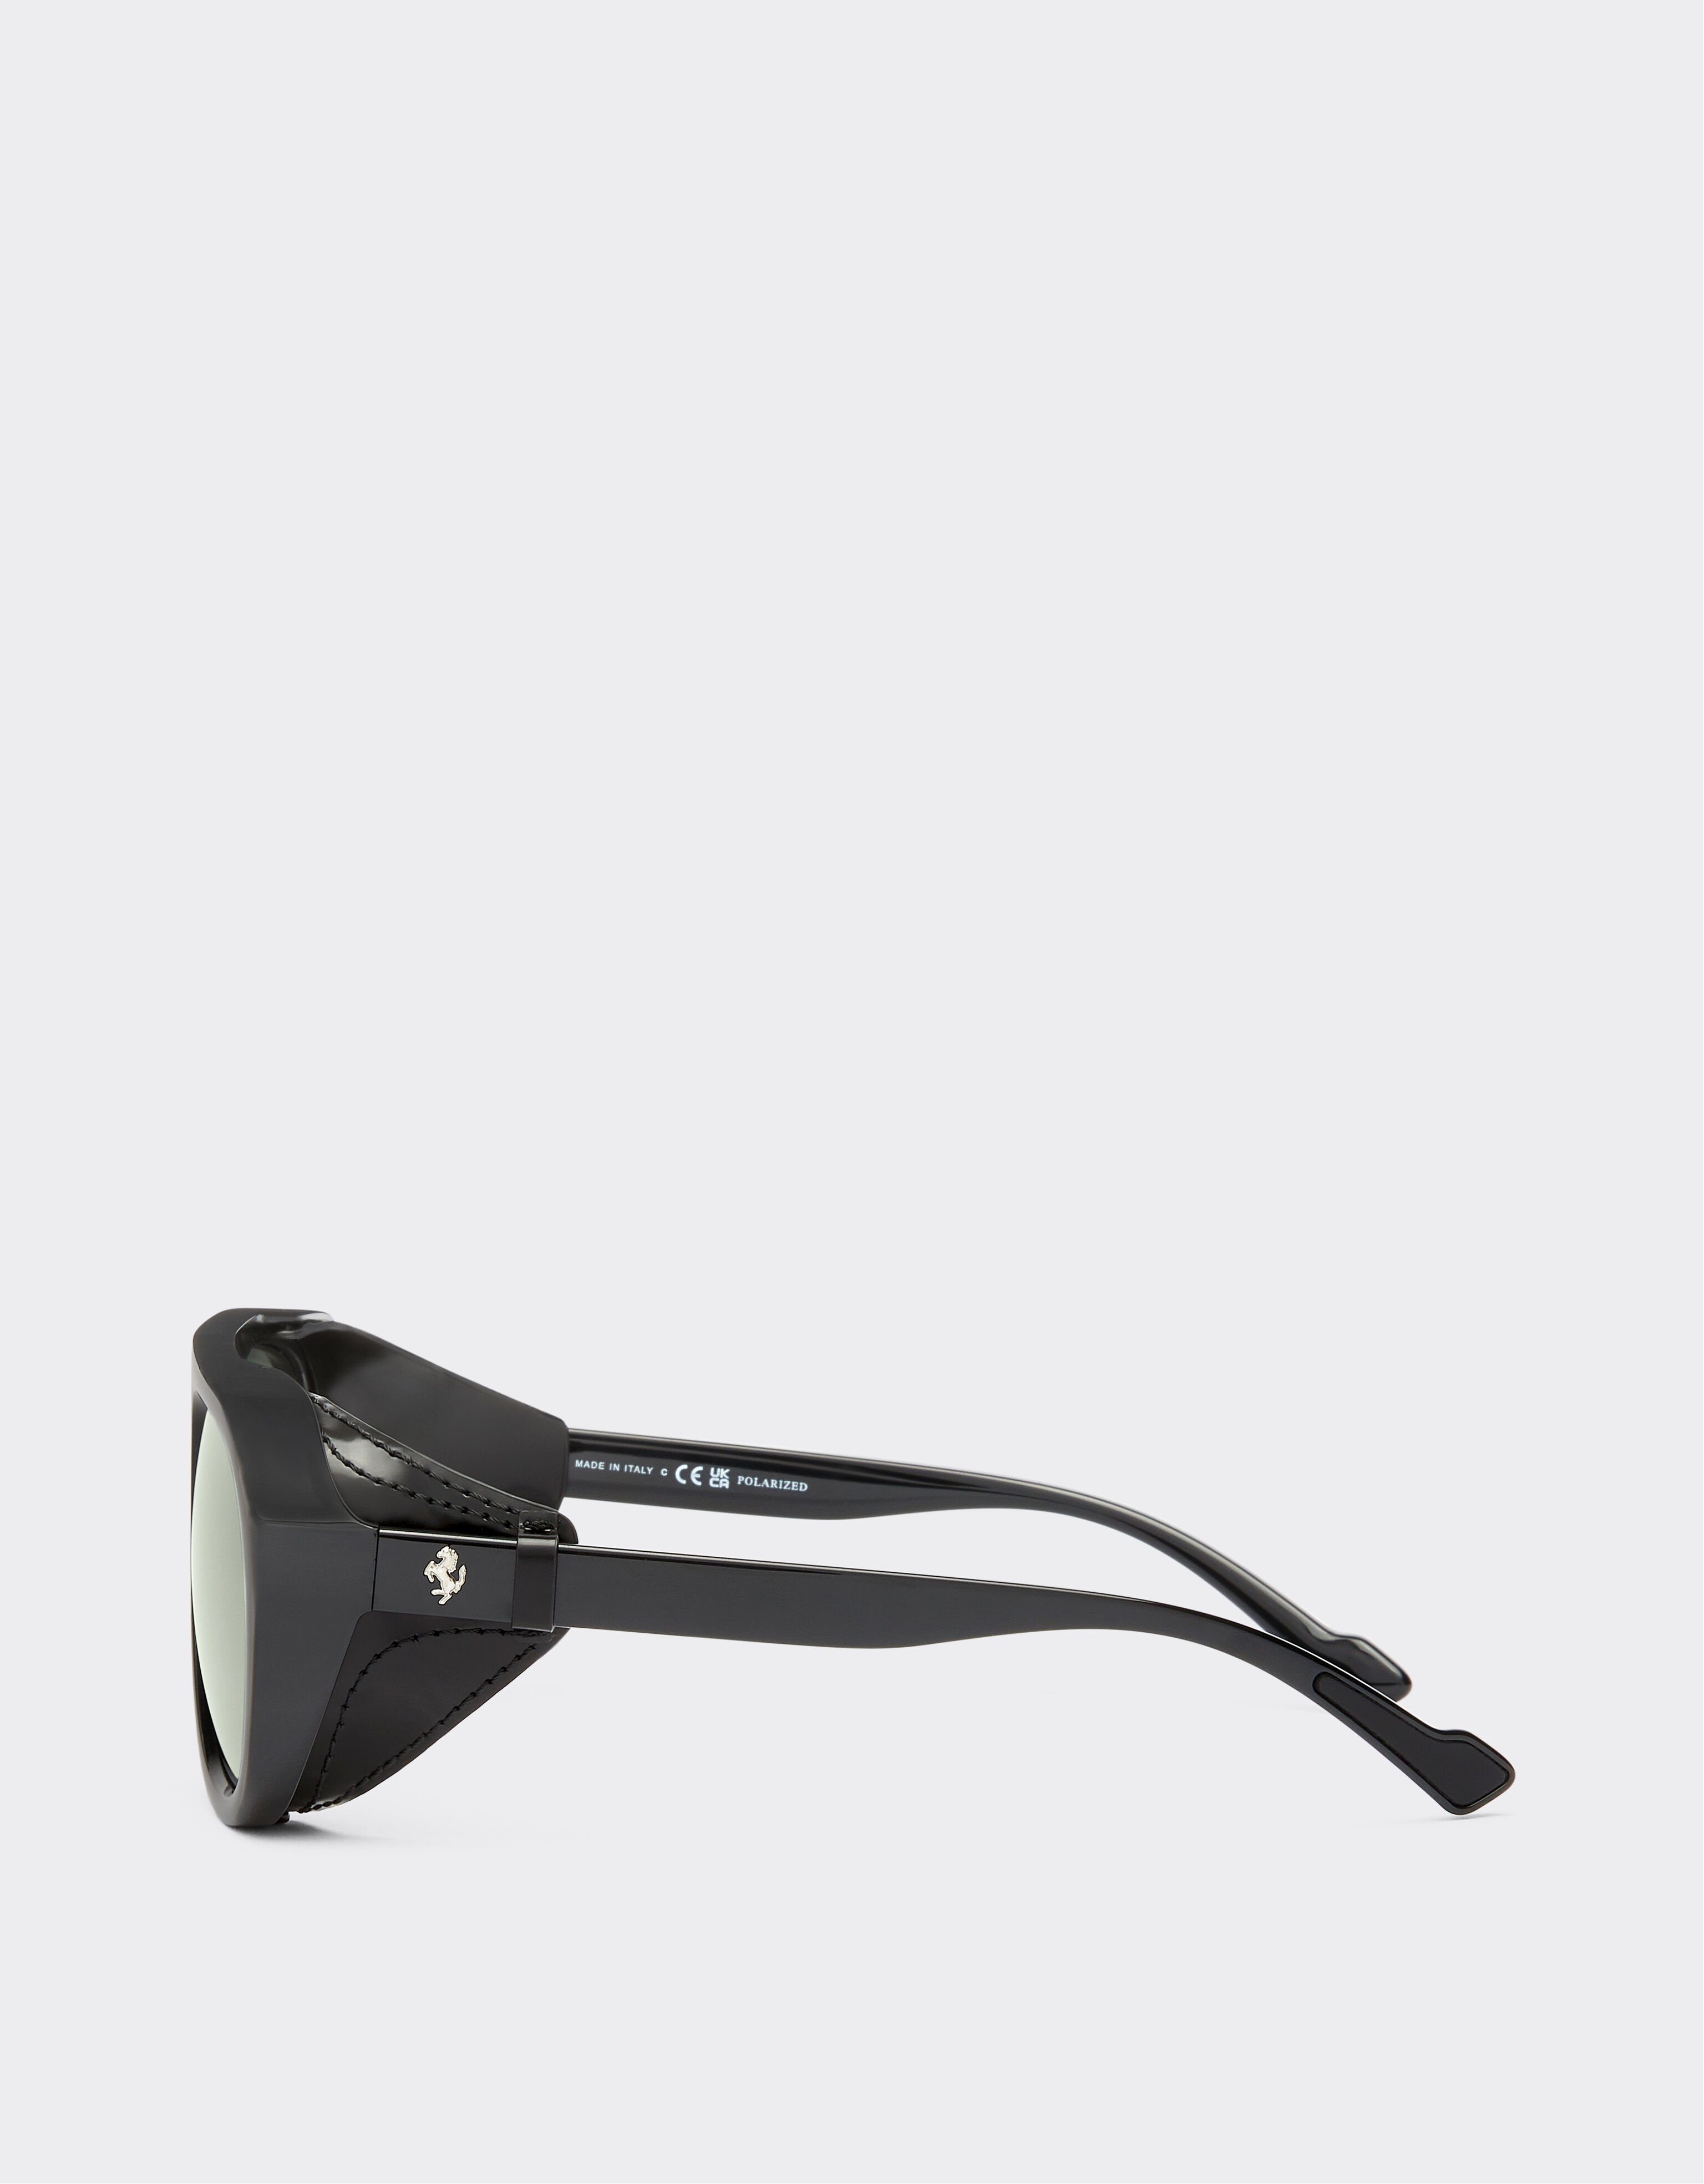 Ferrari Ferrari Sonnenbrille in Schwarz mit Lederdetails und polarisierten verspiegelten Gläsern Schwarz F1253f